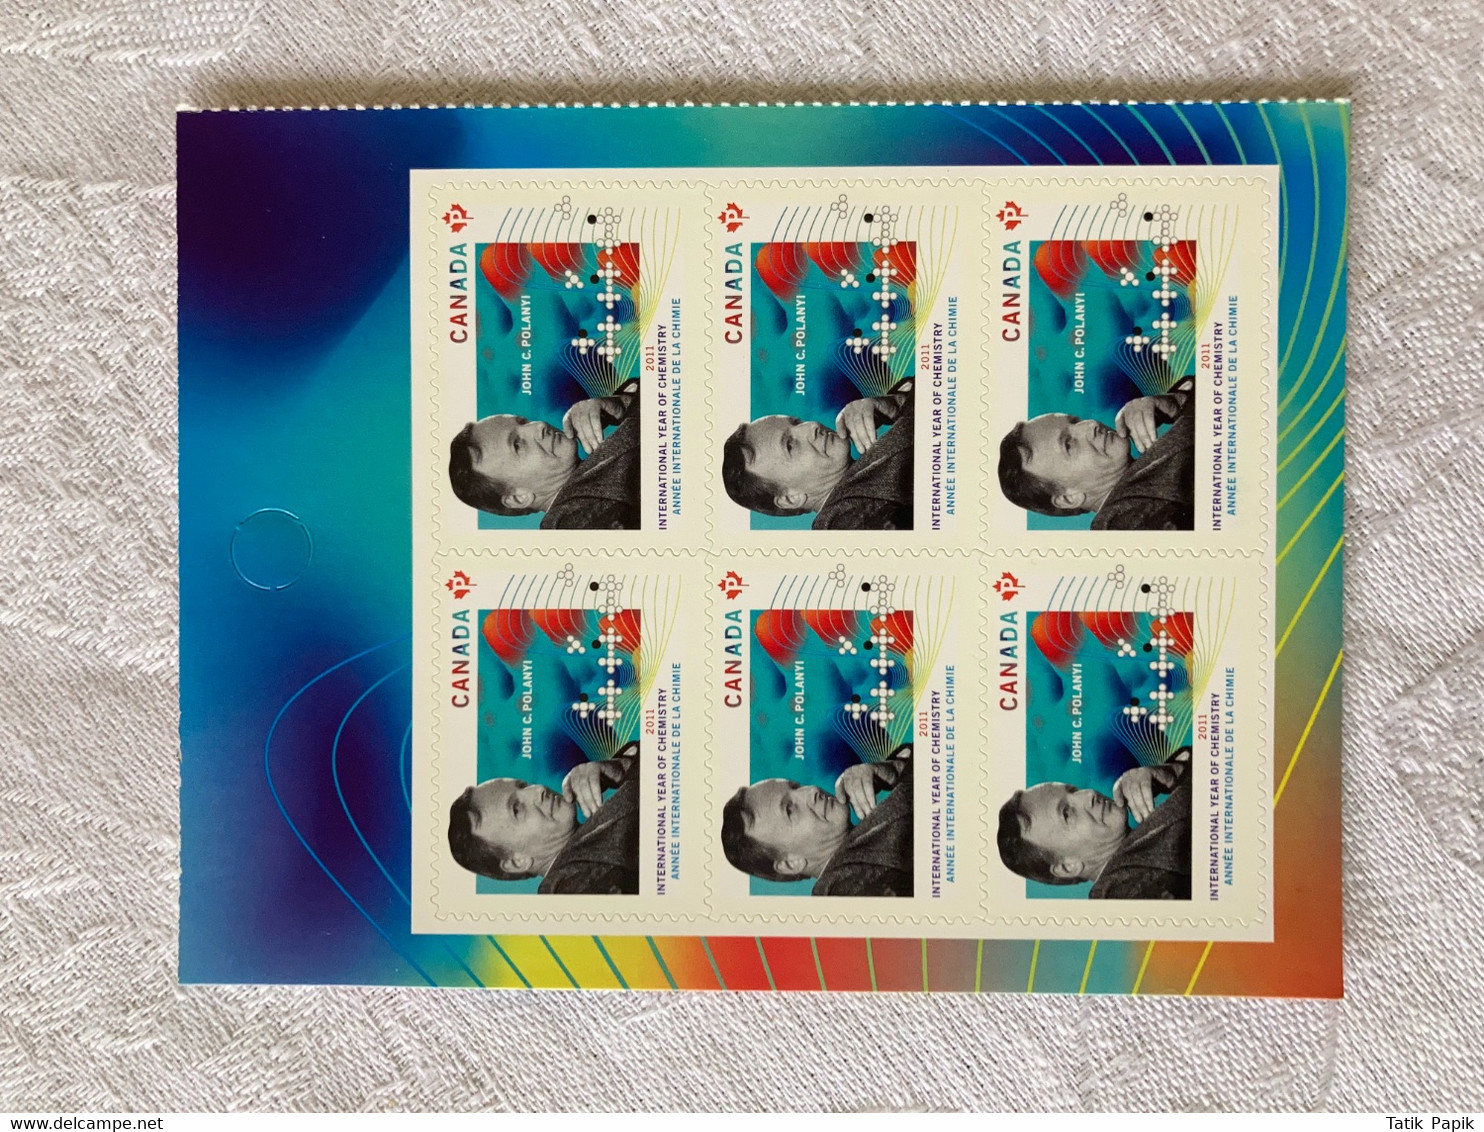 2011 Canada Année Internationale De La Chimie Timbre Permanent Stamps - Pagine Del Libretto